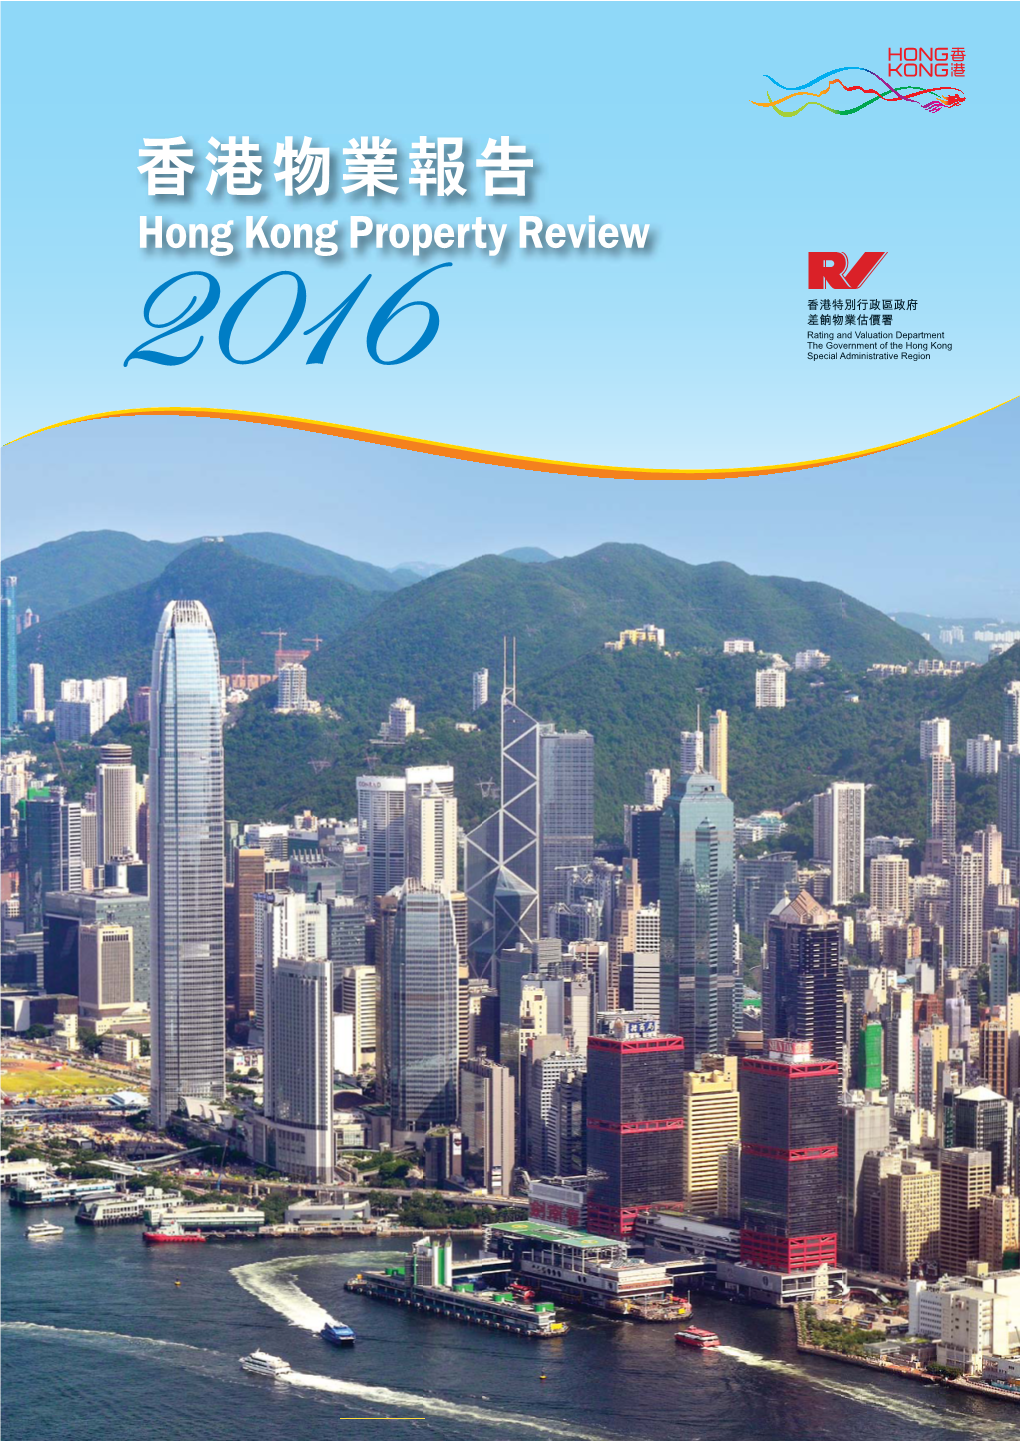 Hong Kong Property Review 2016